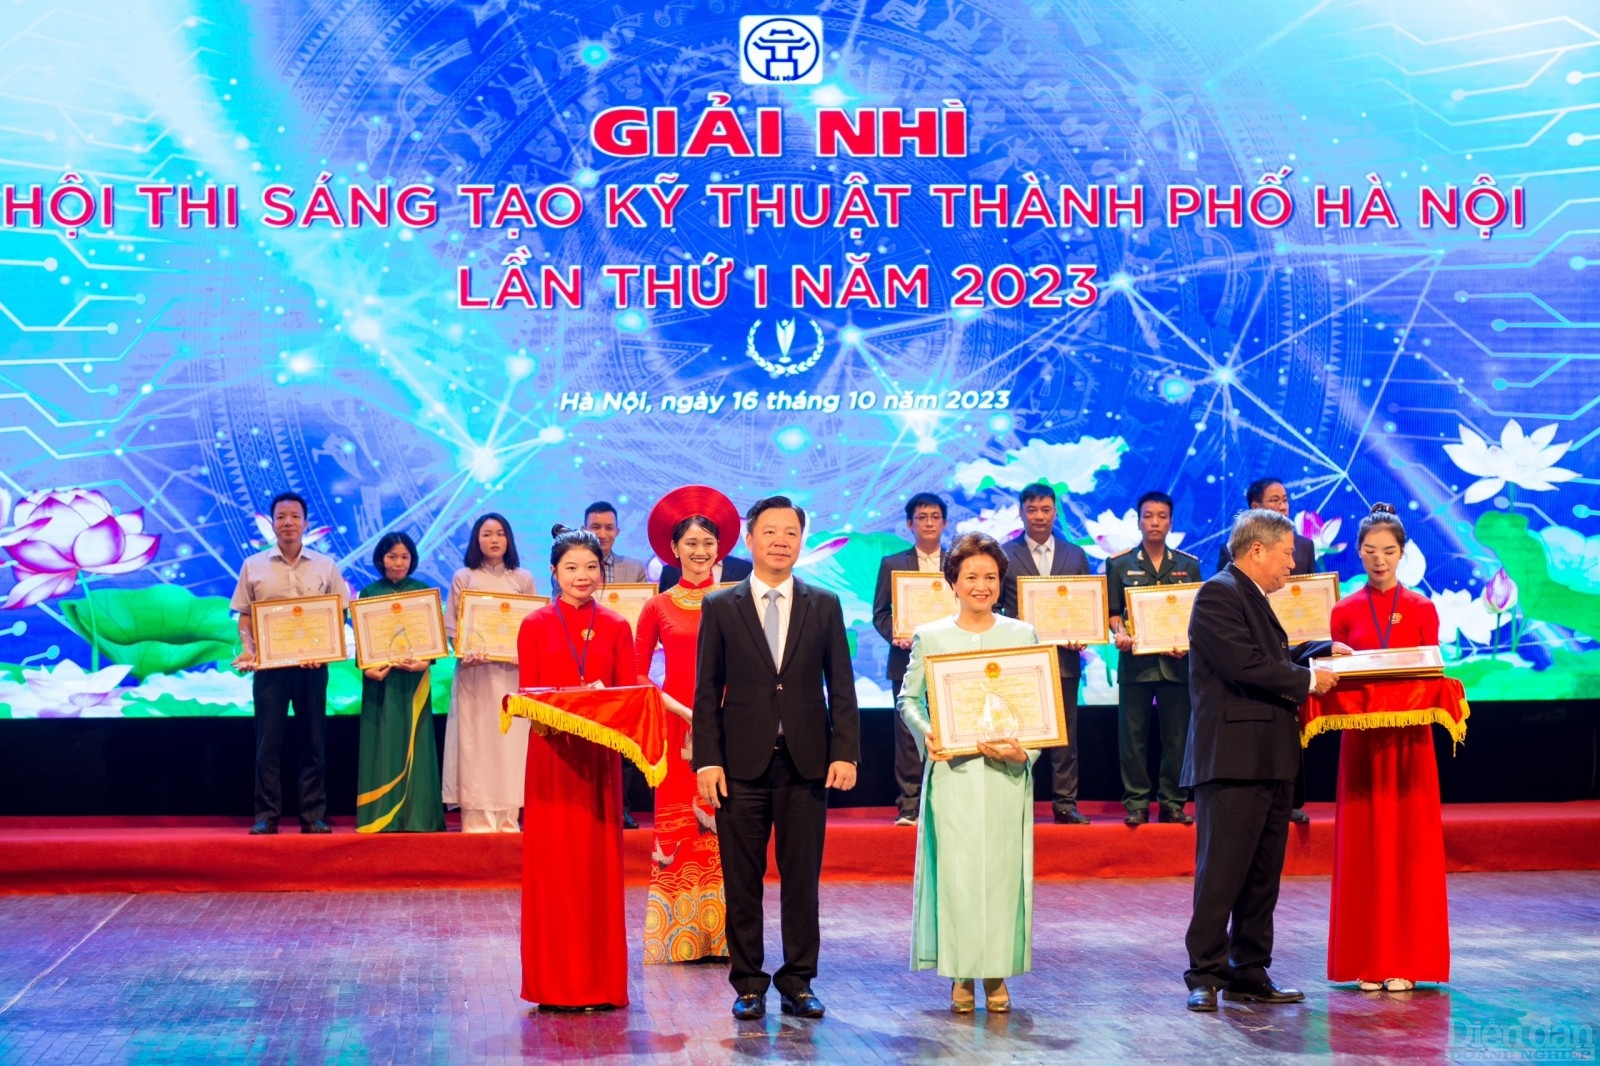 ThS.DS. Nguyễn Thị Hương Liên, Phó Chủ tịch cty cổ phần Sao Thái Dương nhận giải thưởng